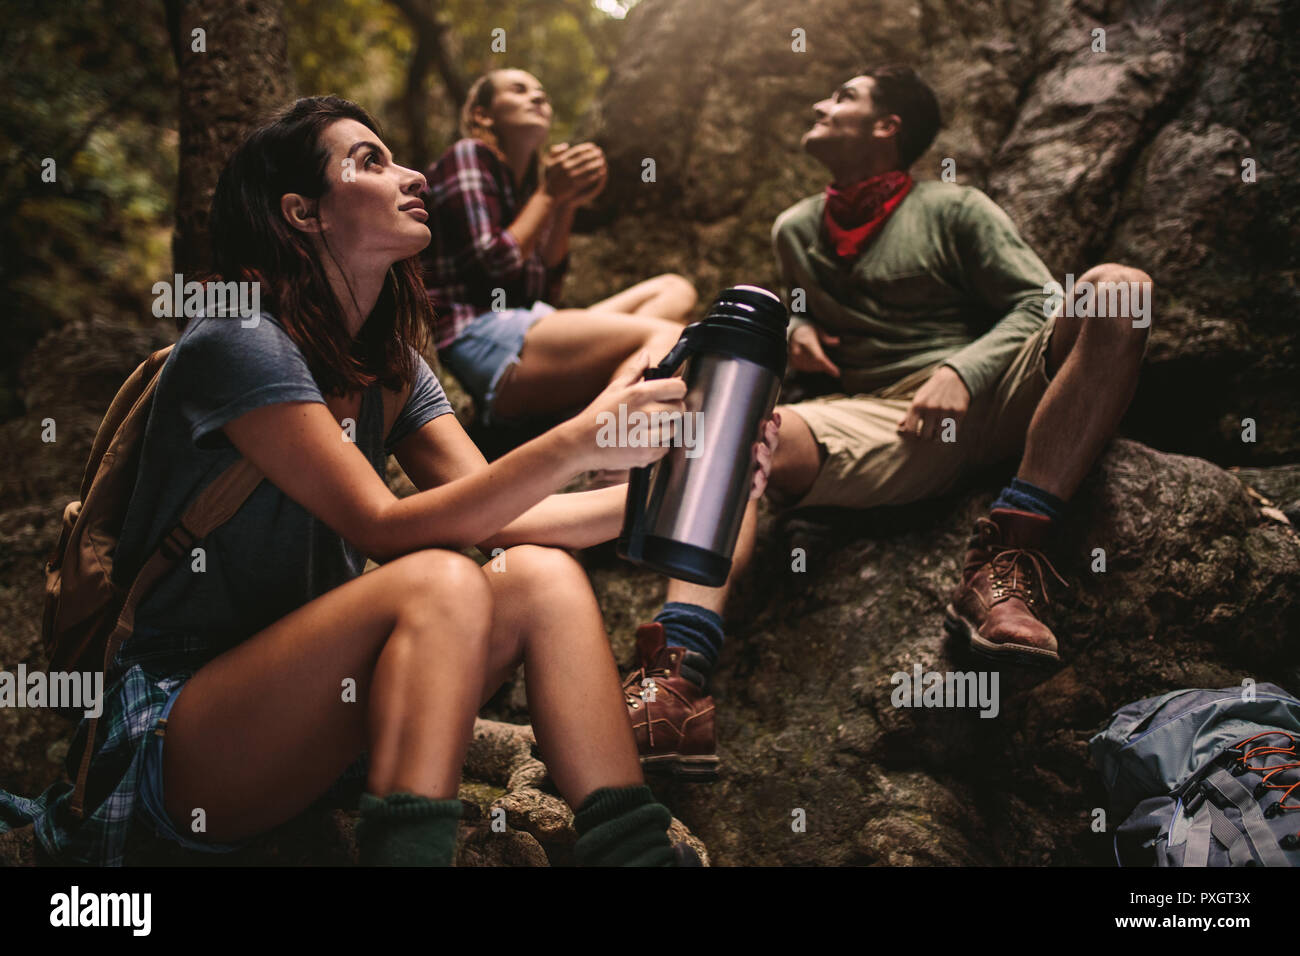 Femme assise sur des rochers holding thermos avec vos amis assis à l'arrière dans la forêt. Groupe d'amis en faisant une pause lors d'une randonnée dans la nature. Banque D'Images